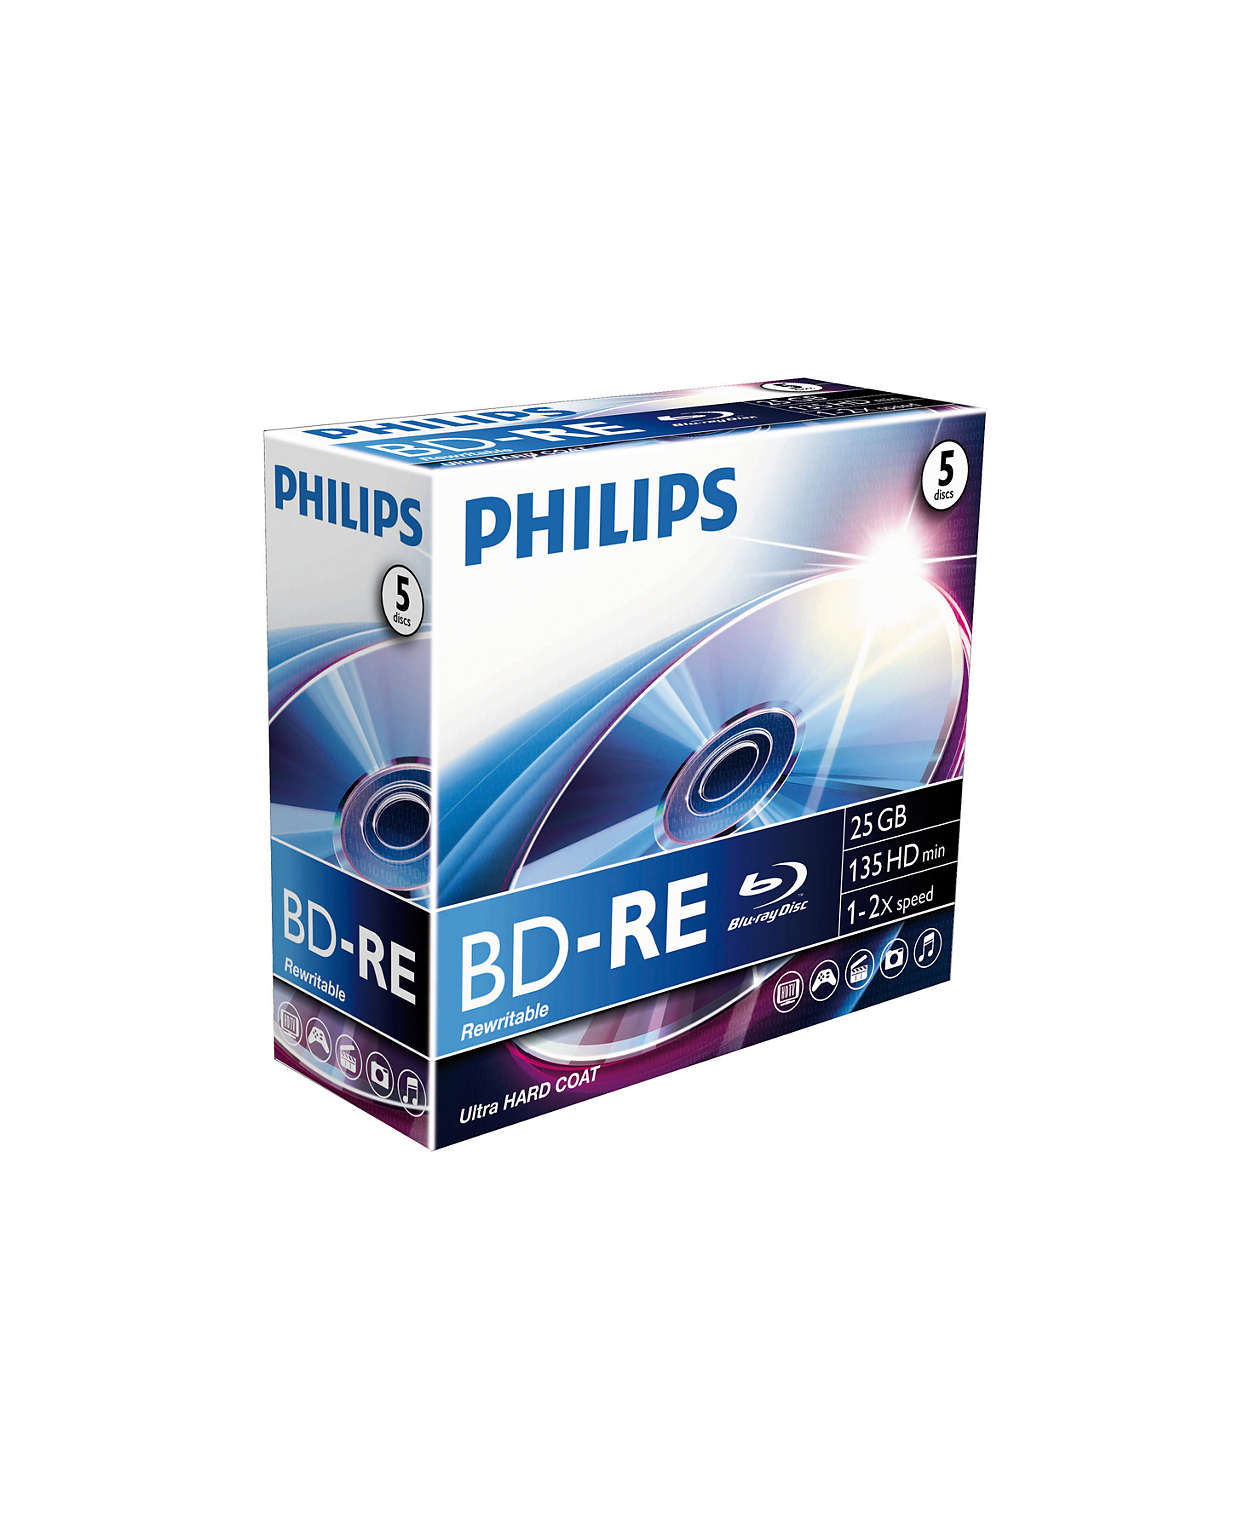 Диск Philips. Чистые Блю Рей диски. РВ Филипс диск. Philips Blu ray. Диски филипс